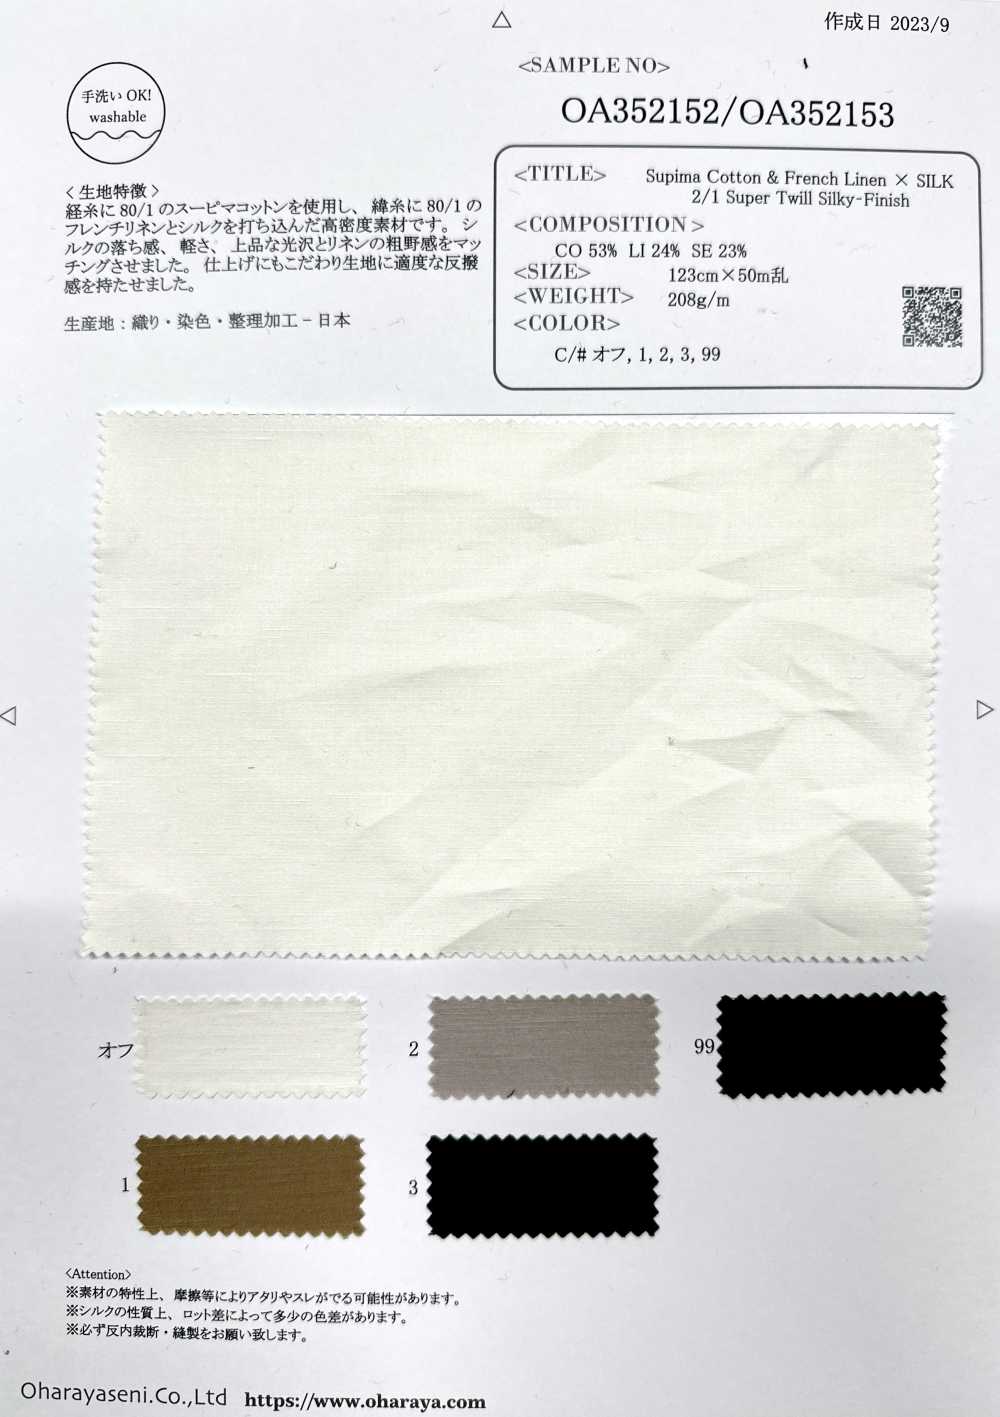 OA352152 Cotone Supima E Lino Francese × SILK 2/1 Super Twill Con Finitura Setosa[Tessile / Tessuto] Oharayaseni